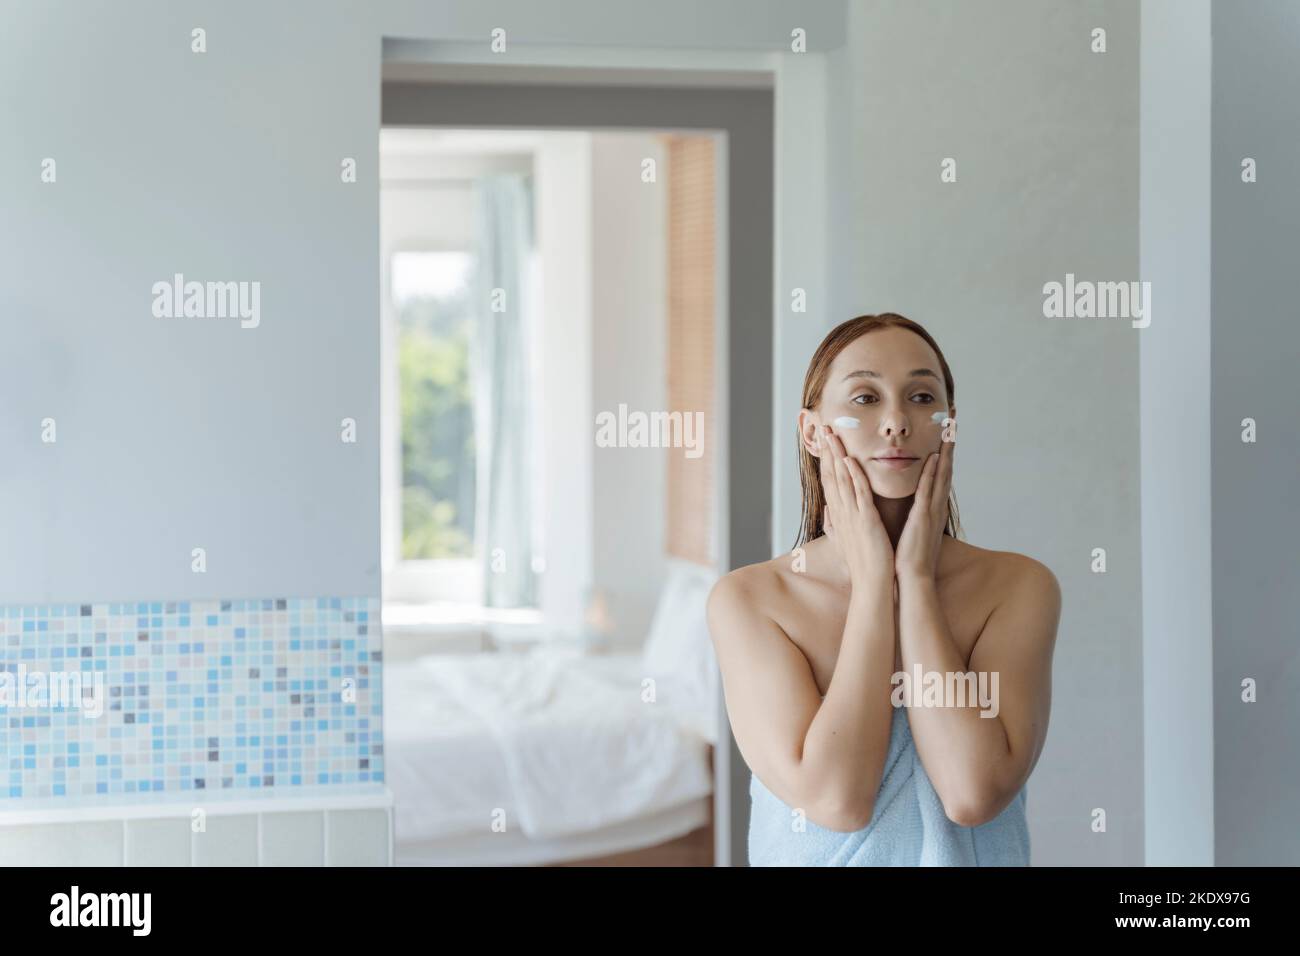 Une jeune femme se tient au miroir dans la salle de bains après une douche et applique de la crème sur son visage. La jeune femme utilise une crème pour le visage. Mise au point douce. Banque D'Images